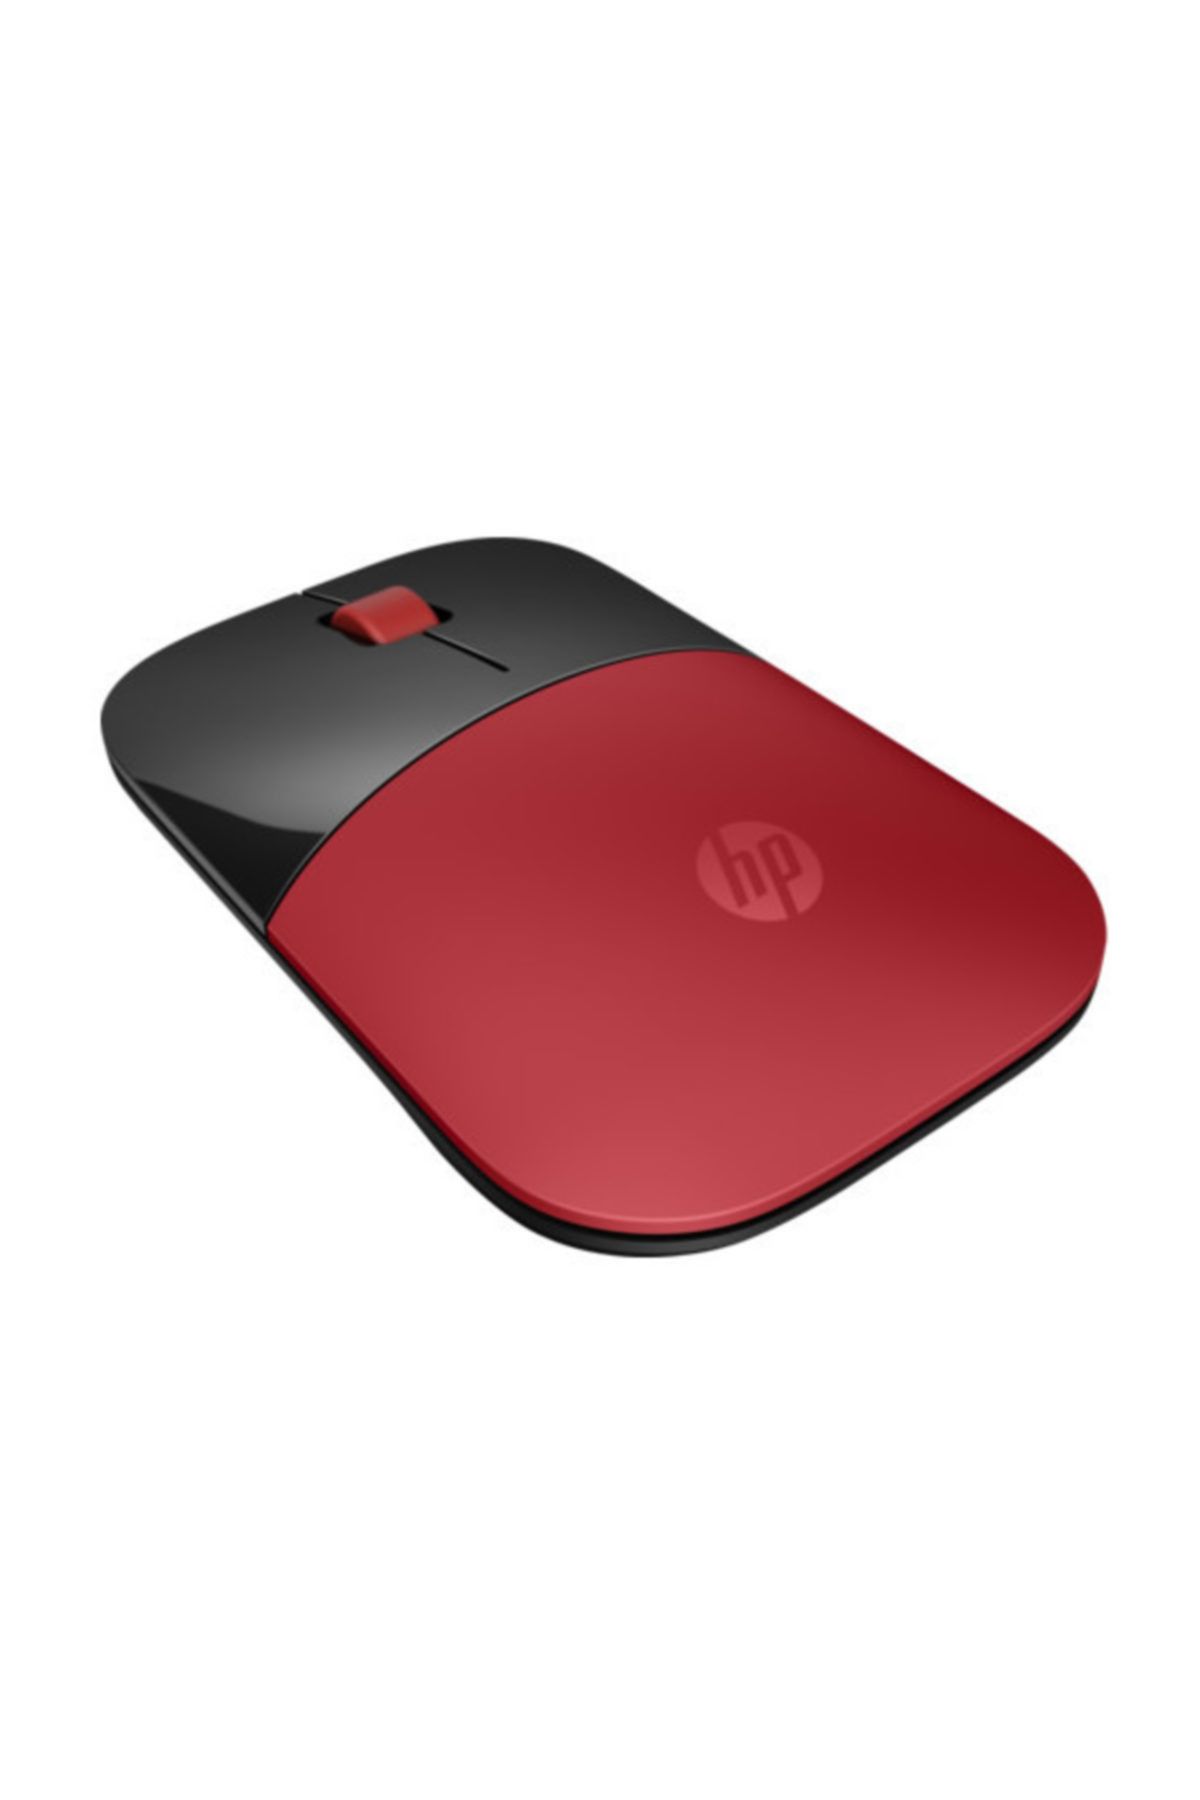 HP Z3700 Kablosuz Mouse - Kırmızı (V0L82AA)